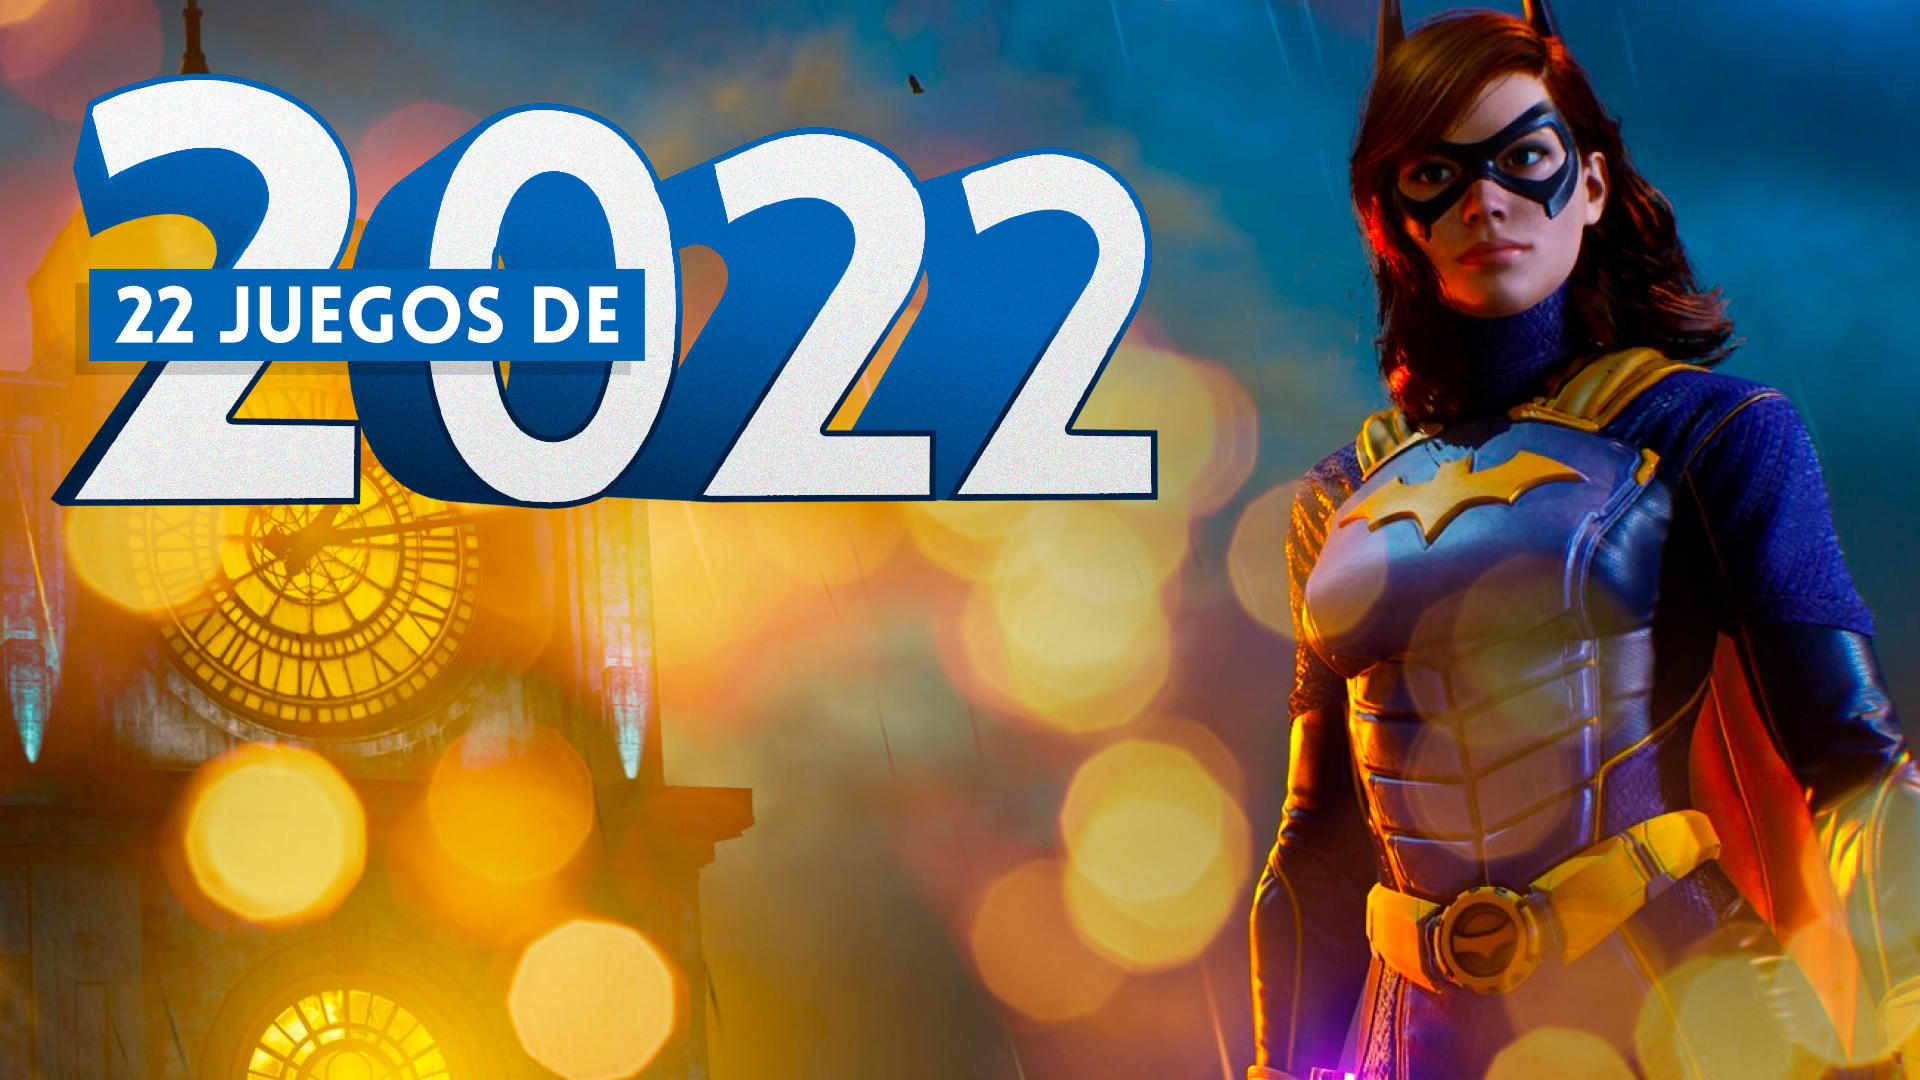 22 juegos de 2022 - Gotham Knights